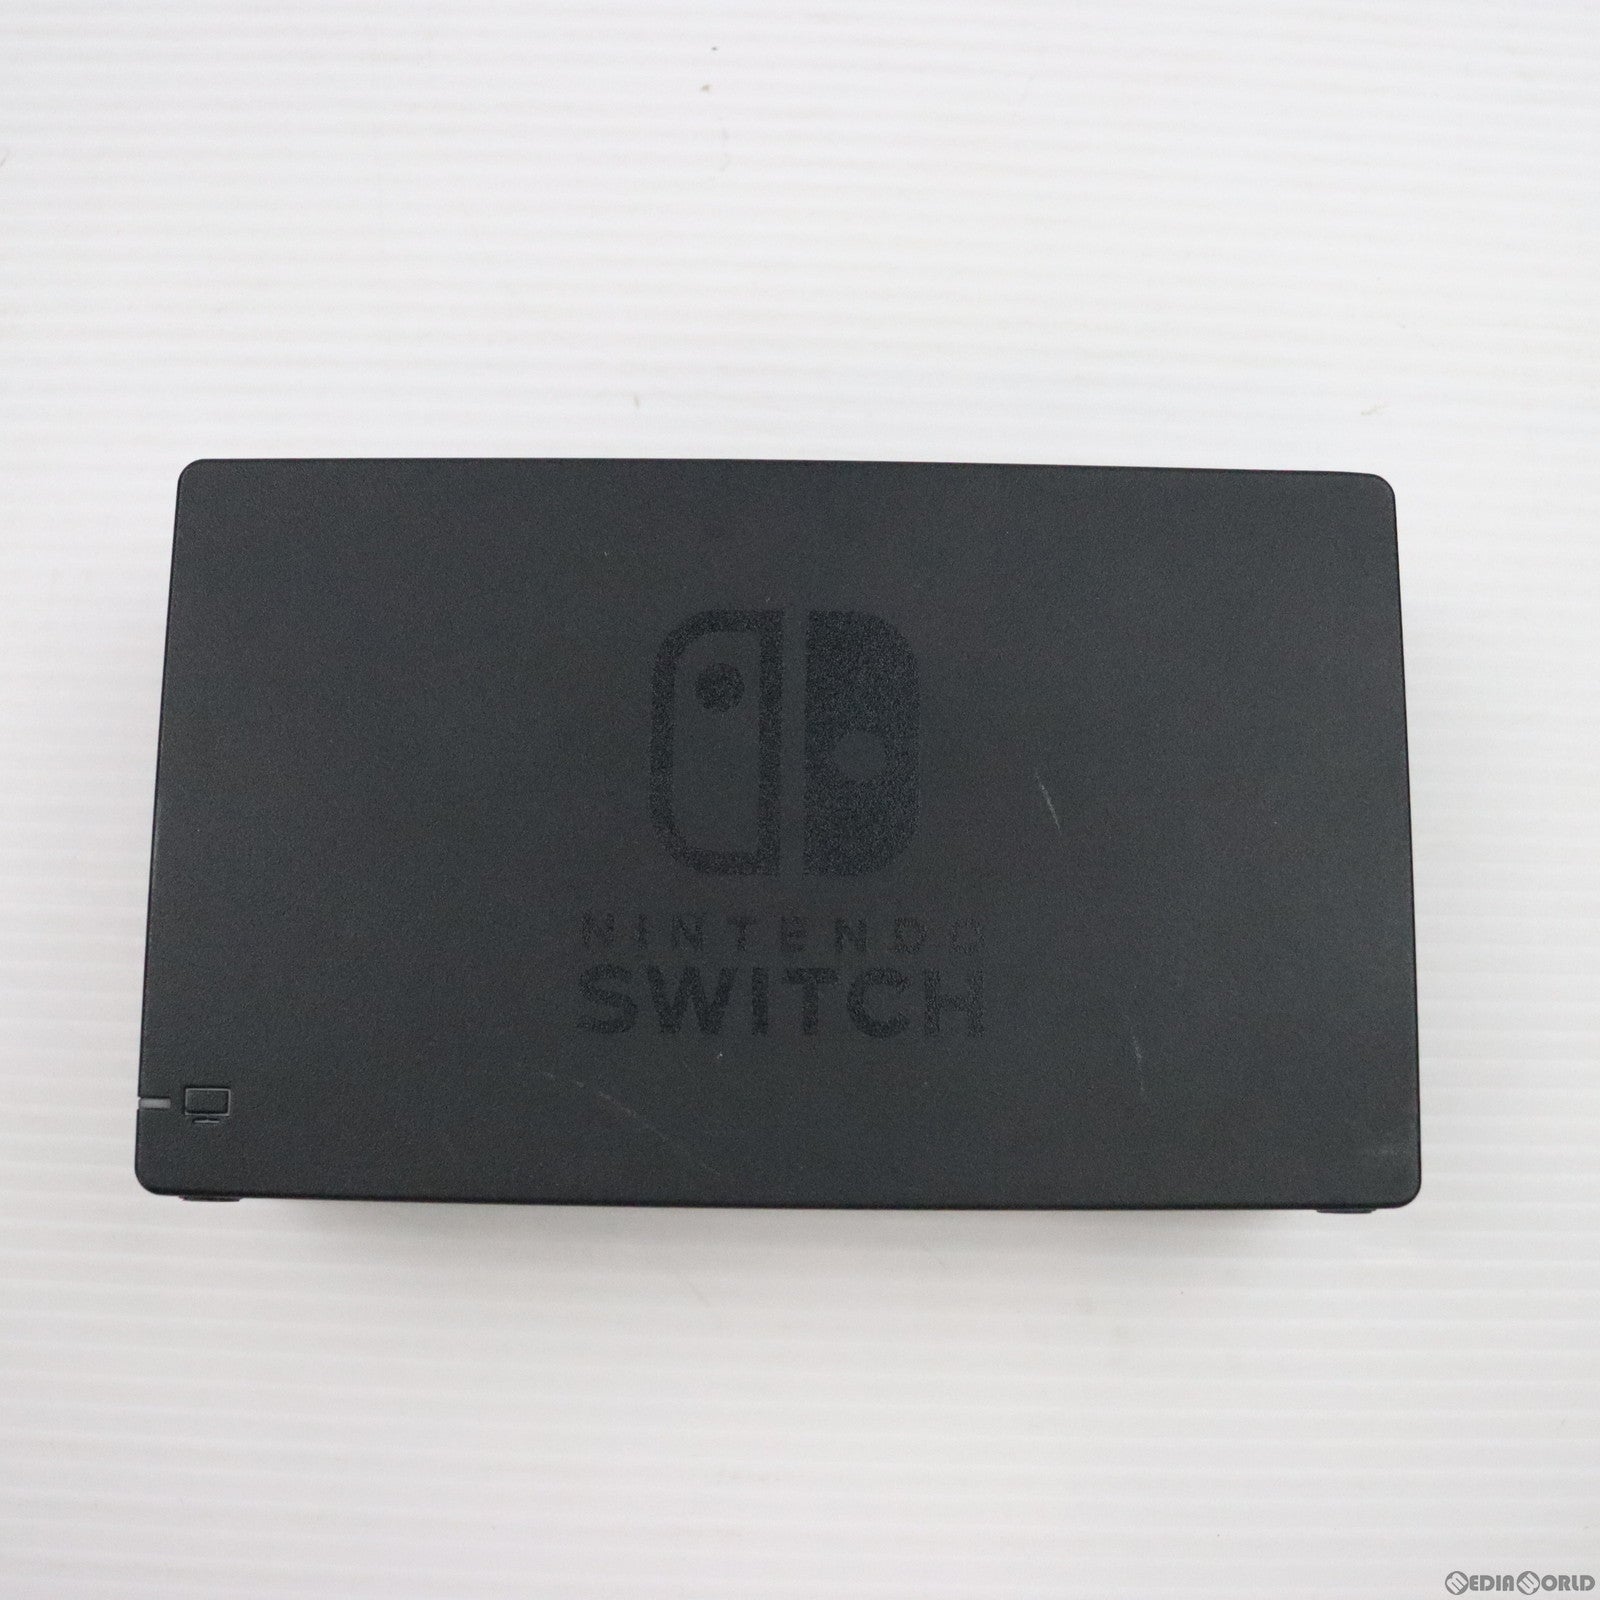 【中古即納】[本体][Switch]マイニンテンドーストア限定 (新型)Nintendo Switch(ニンテンドースイッチ) カスタマイズ Joy-Con(L) ネオンパープル/(R) ネオンピンク Joy-Conストラップ ブラック/ブラック(HAD-S-KAYAA)(20190830)